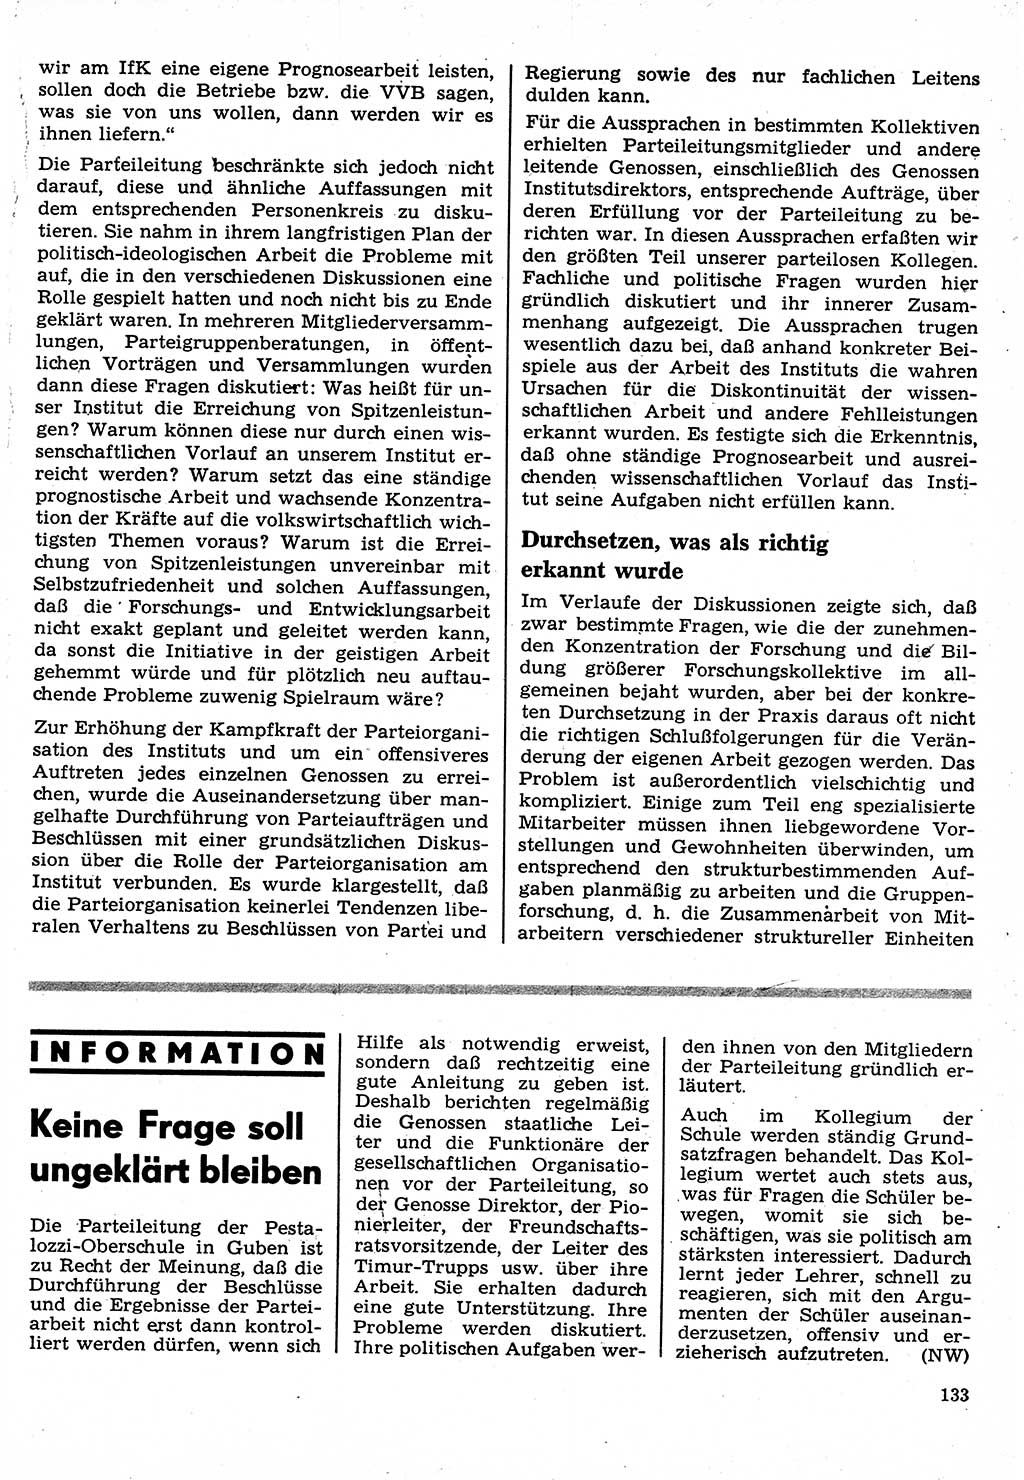 Neuer Weg (NW), Organ des Zentralkomitees (ZK) der SED (Sozialistische Einheitspartei Deutschlands) für Fragen des Parteilebens, 24. Jahrgang [Deutsche Demokratische Republik (DDR)] 1969, Seite 133 (NW ZK SED DDR 1969, S. 133)